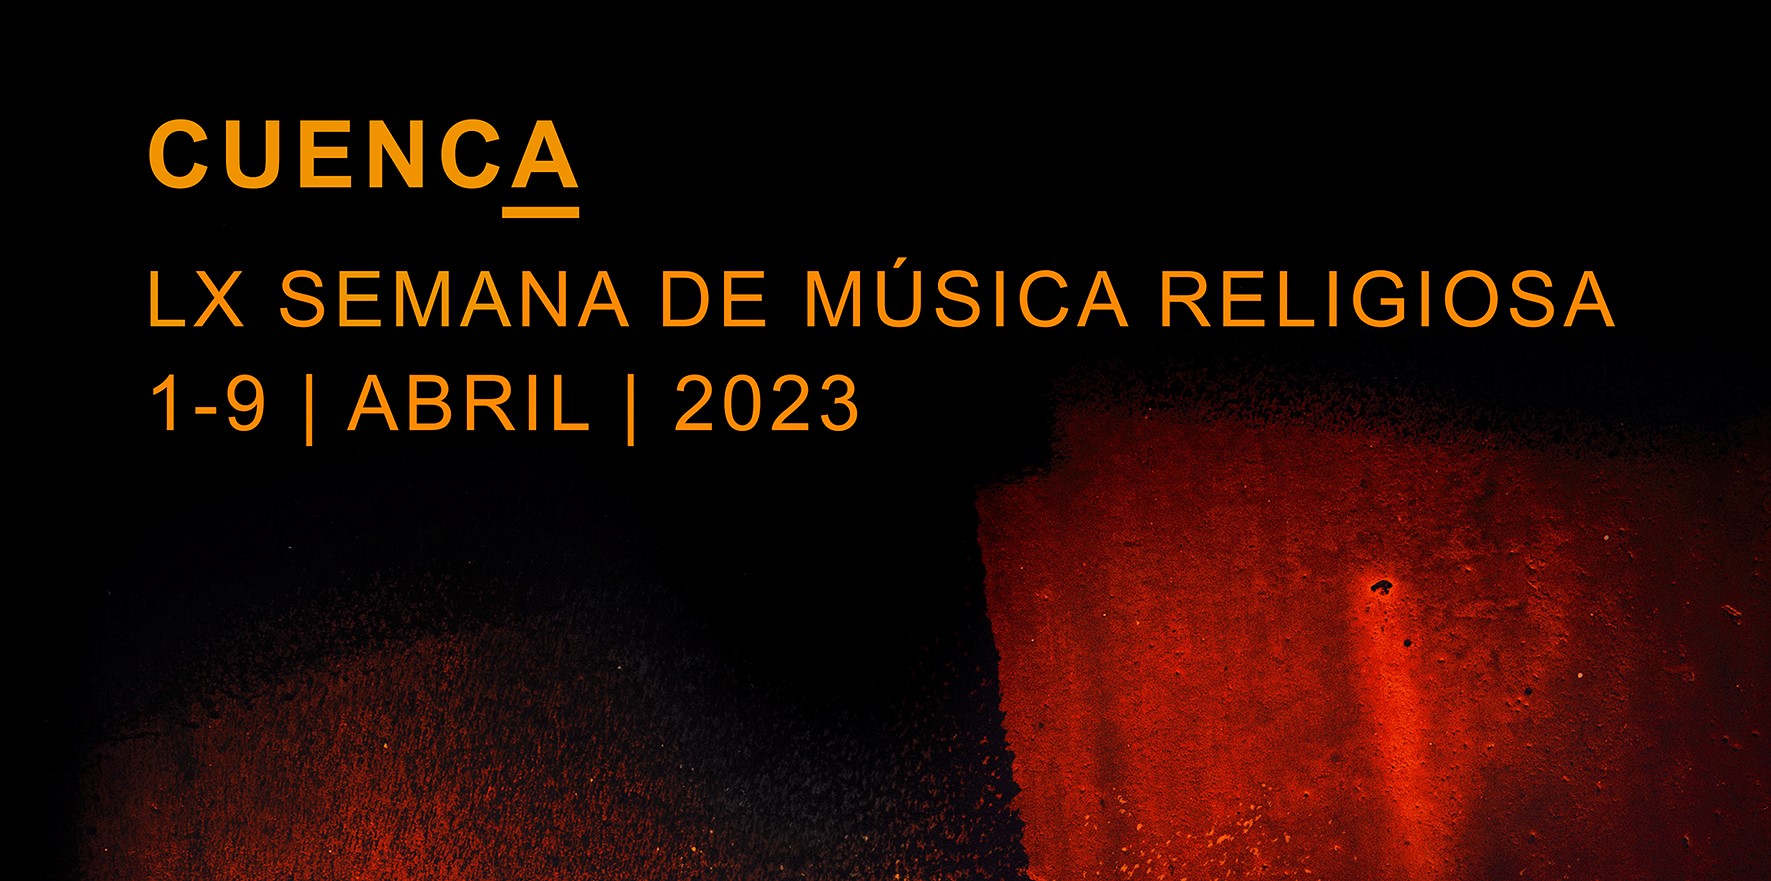 A merced de dueño comprador Semana de Música Religiosa de Cuenca 2023 - Coro Easo Abesbatza